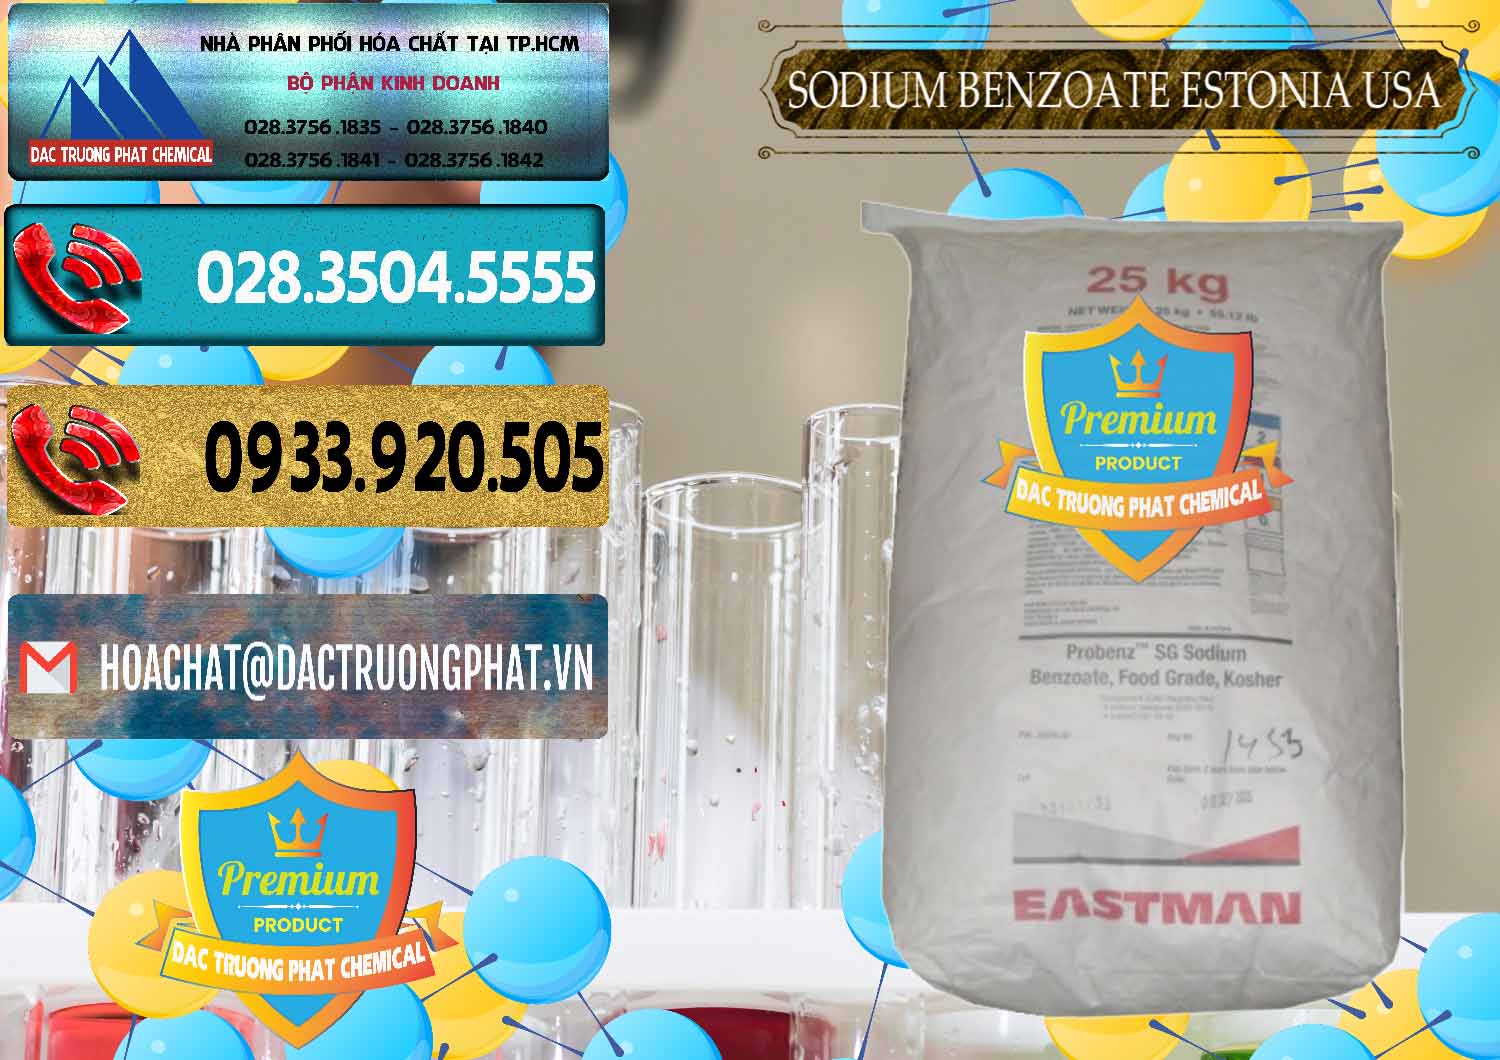 Đơn vị chuyên bán và phân phối Sodium Benzoate - Mốc Bột Estonia Mỹ USA - 0468 - Công ty chuyên bán & cung cấp hóa chất tại TP.HCM - hoachatdetnhuom.com